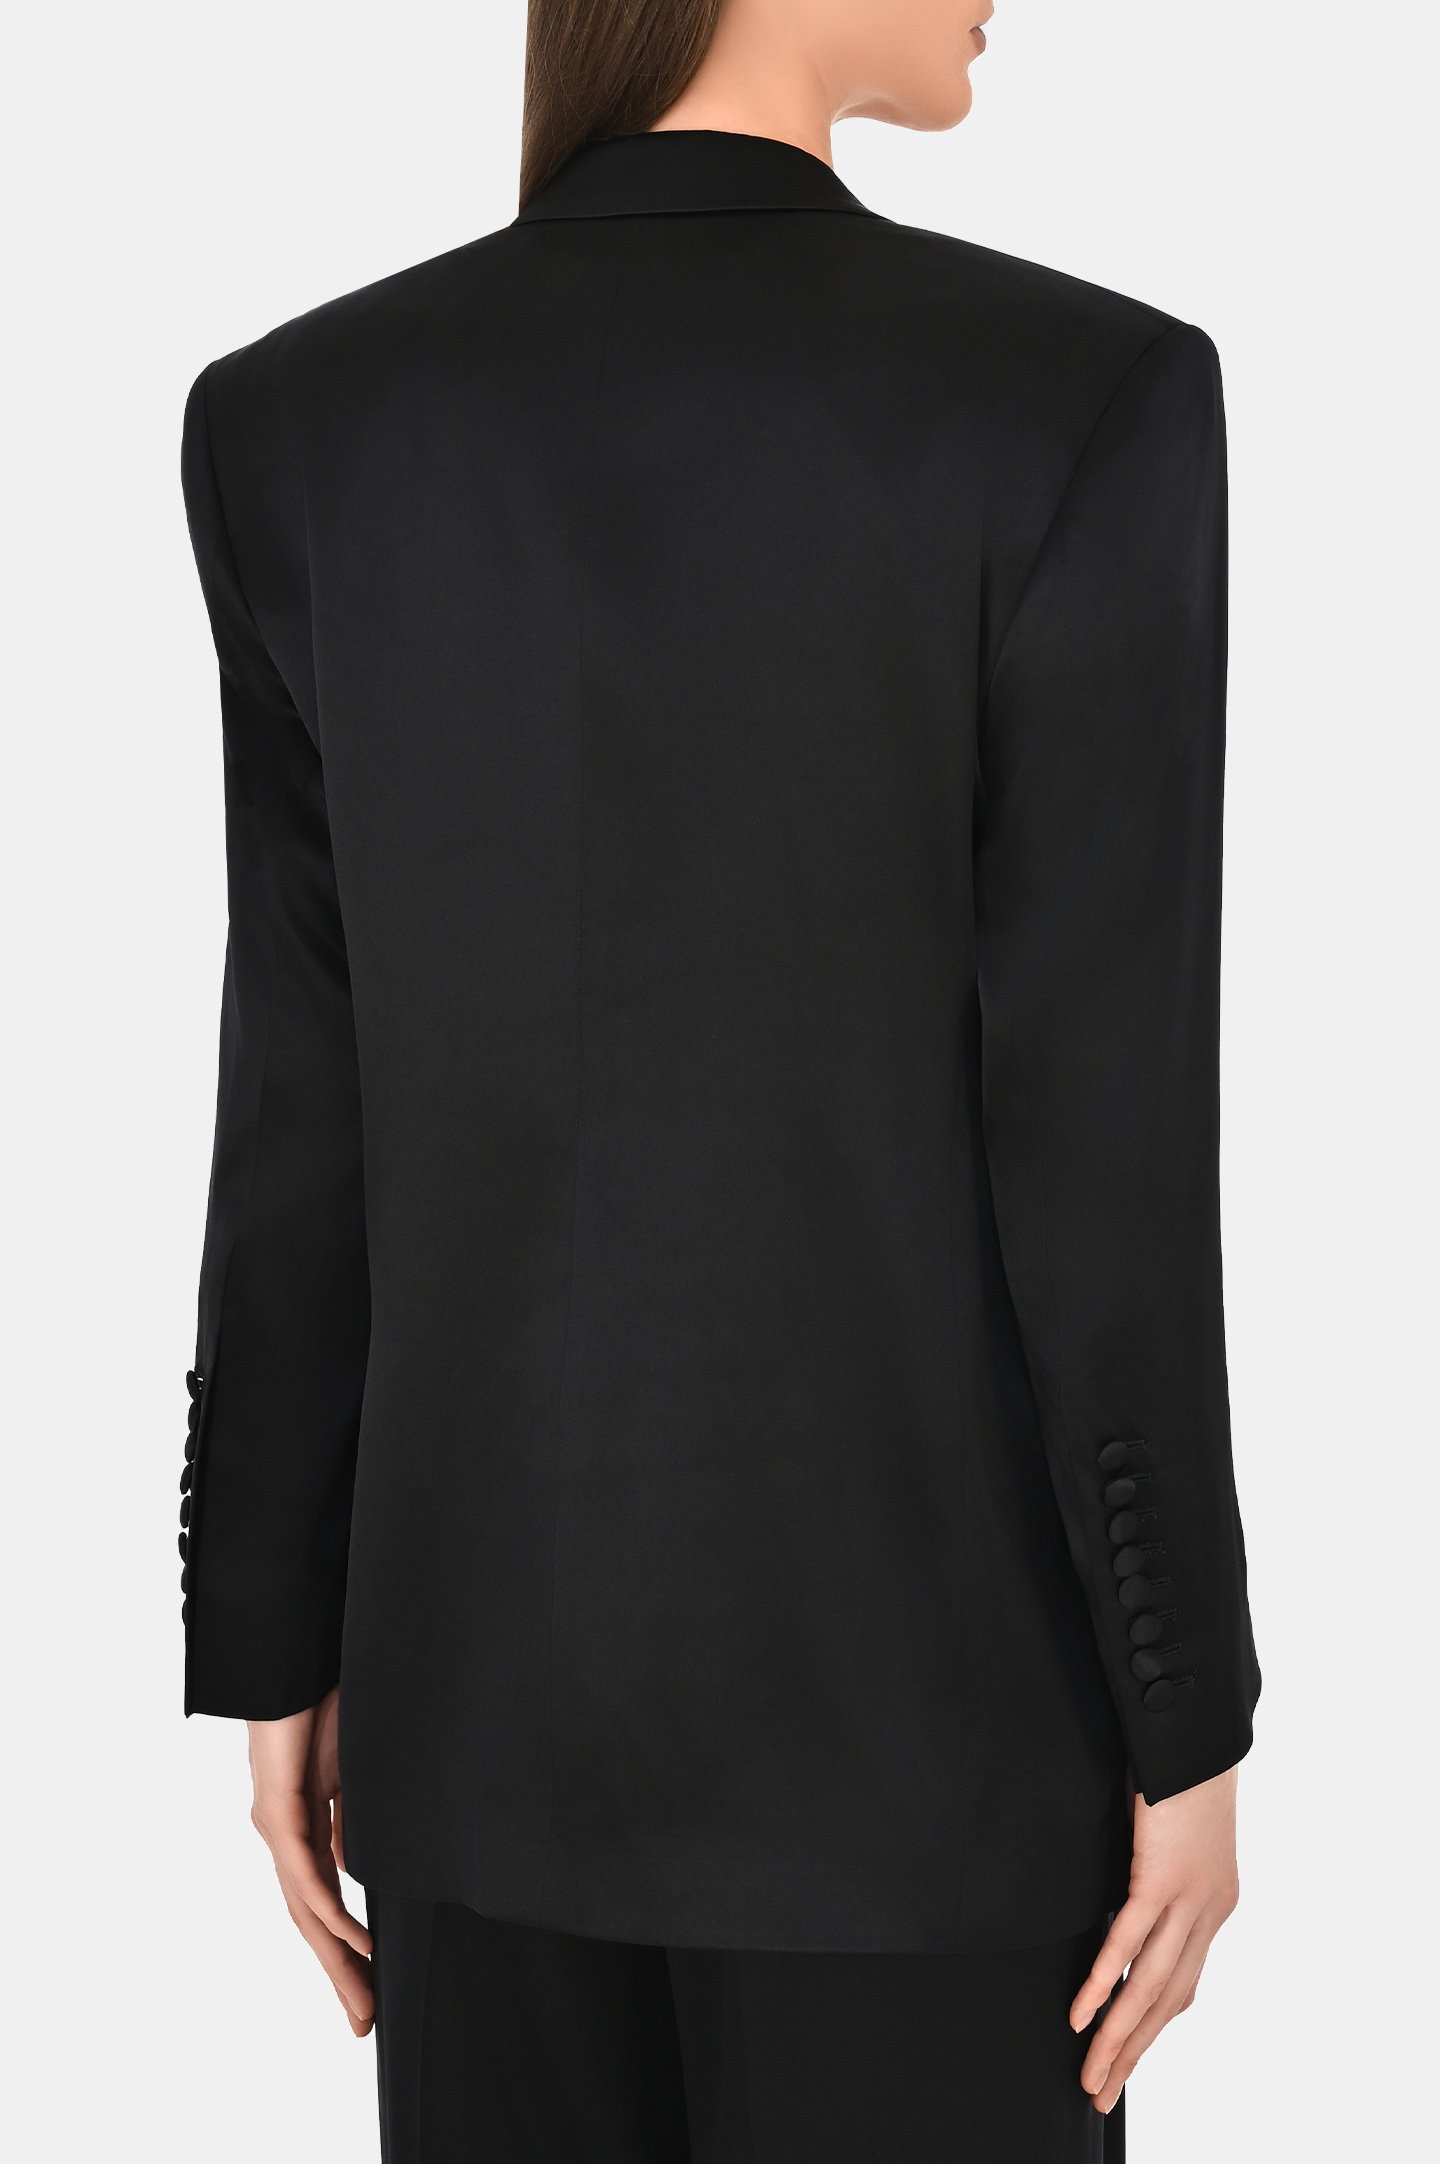 Жакет из шелка двухбортный с карманами JACOB LEE WSB047SS24-1SSB, цвет: Черный, Женский